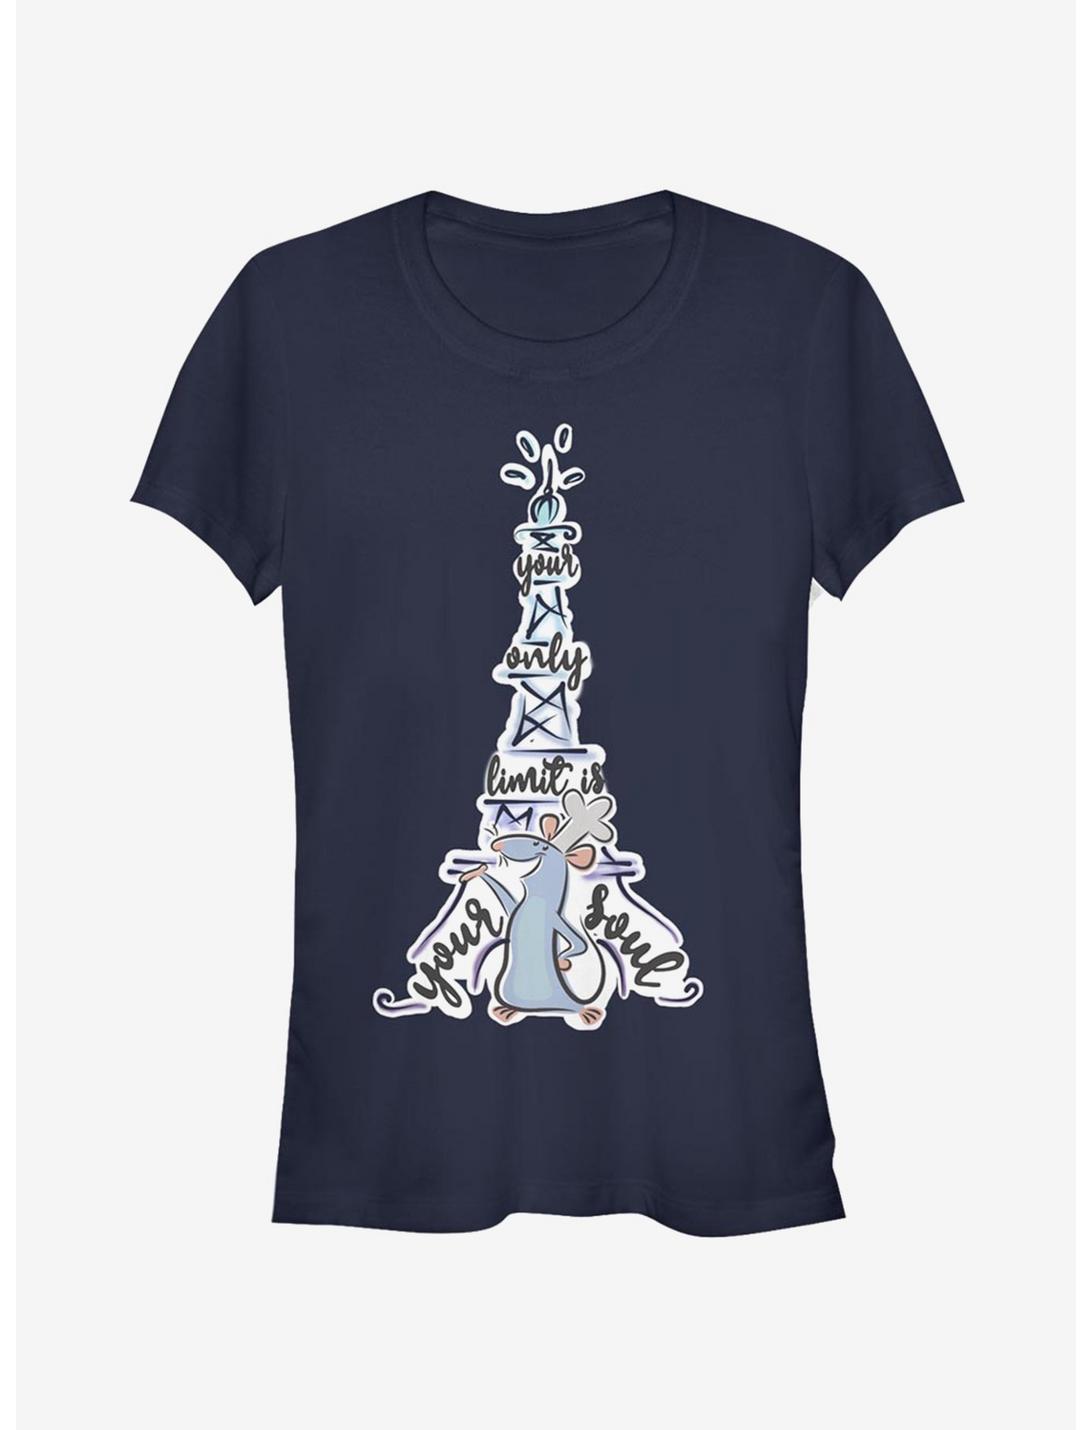 Disney Pixar Ratatouille Limitless Remy Girls T-Shirt, NAVY, hi-res